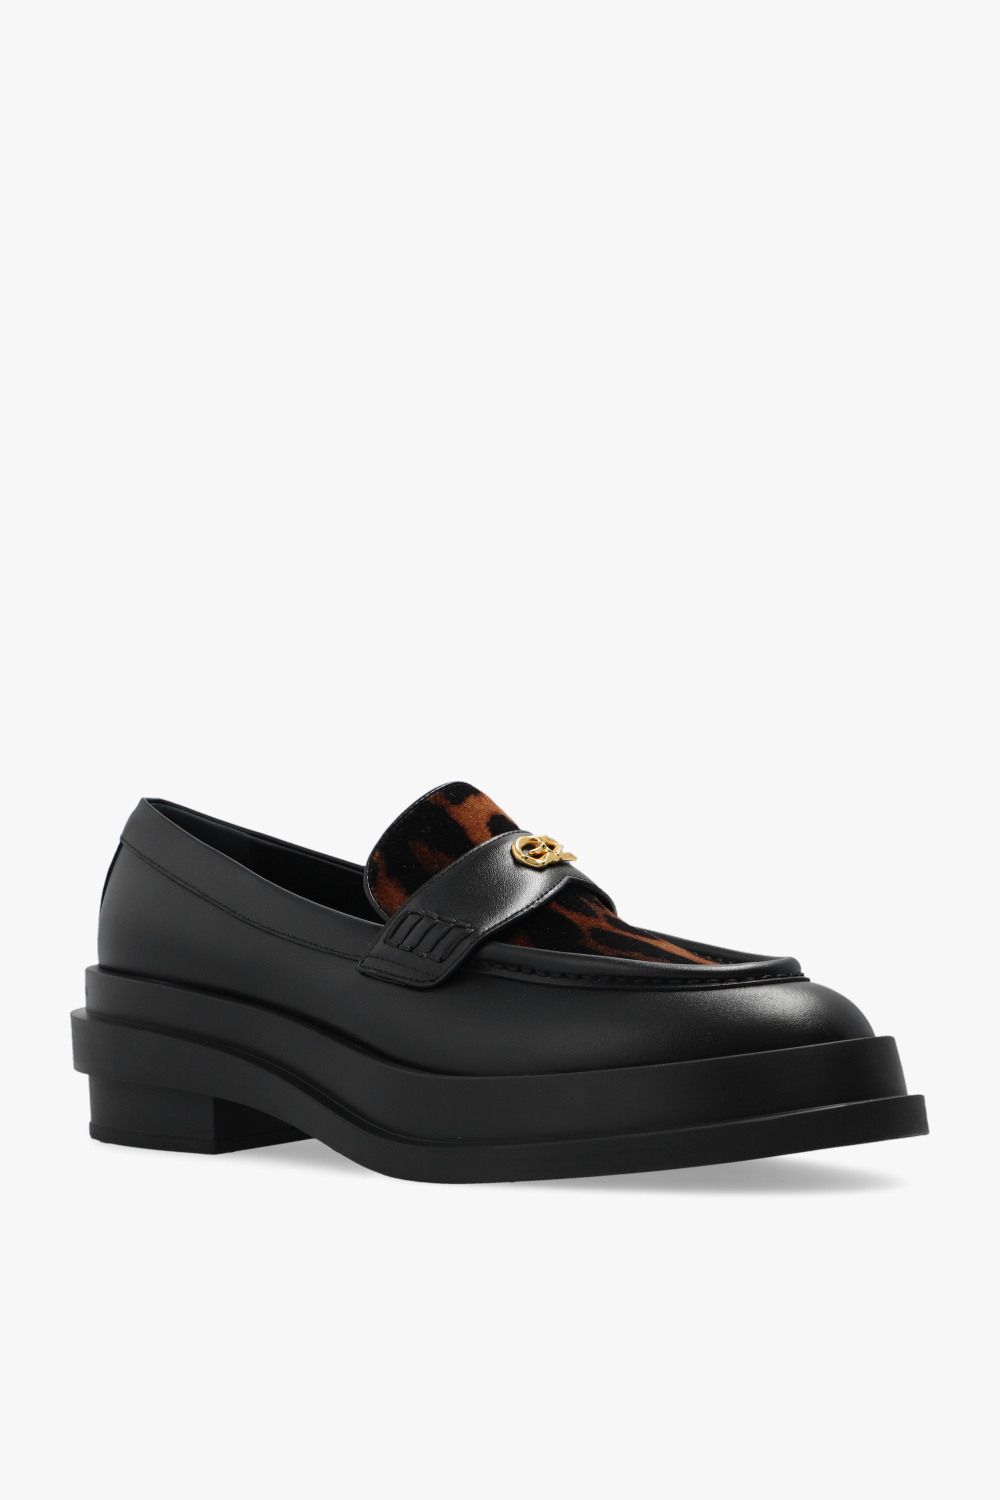 Giuseppe Zanotti ‘Mallick’ leather loafers